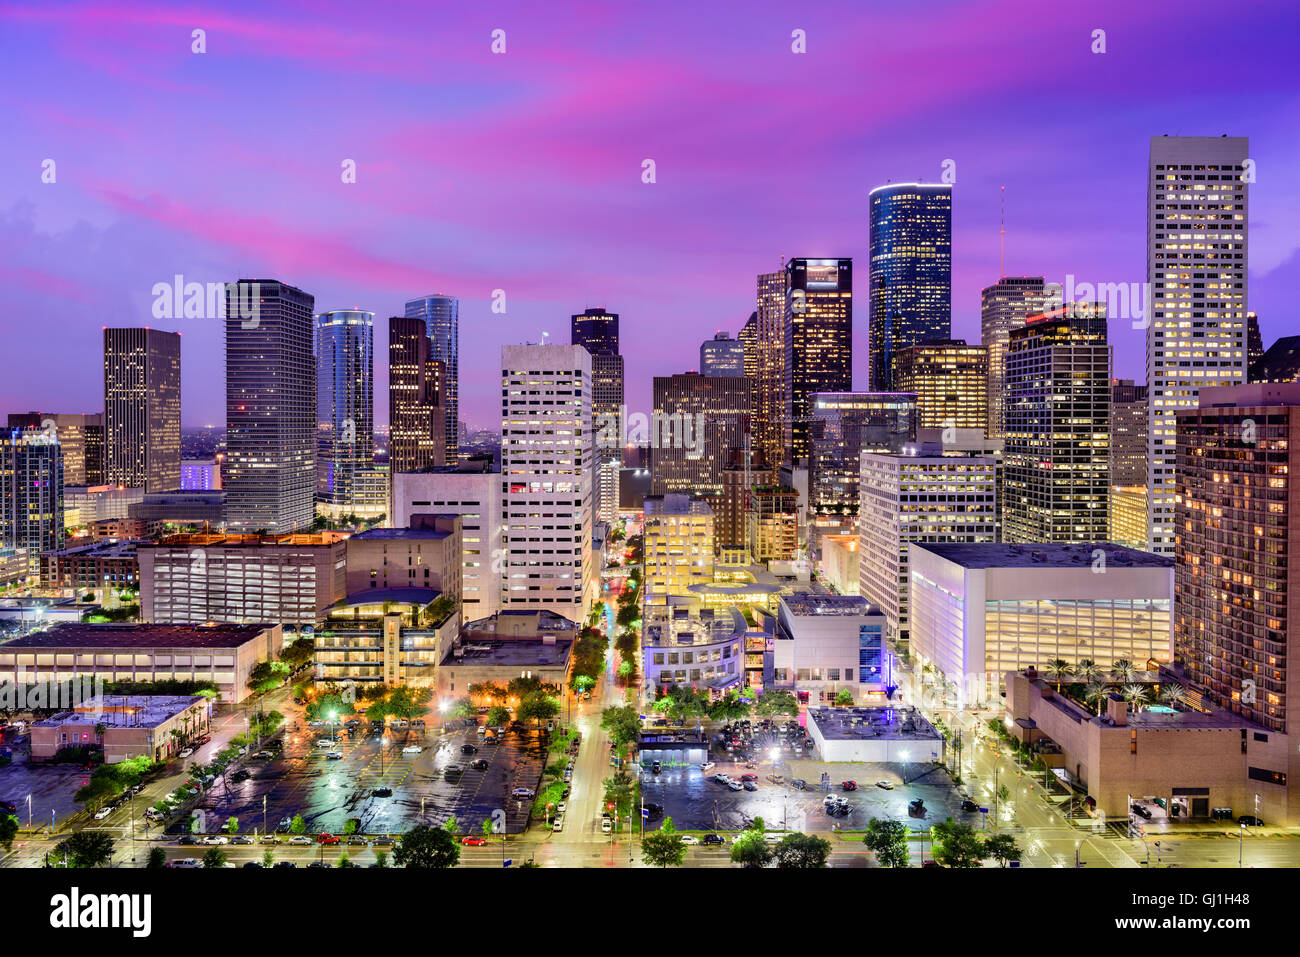 Houston, Texas, USA downtown city skyline. Stock Photo